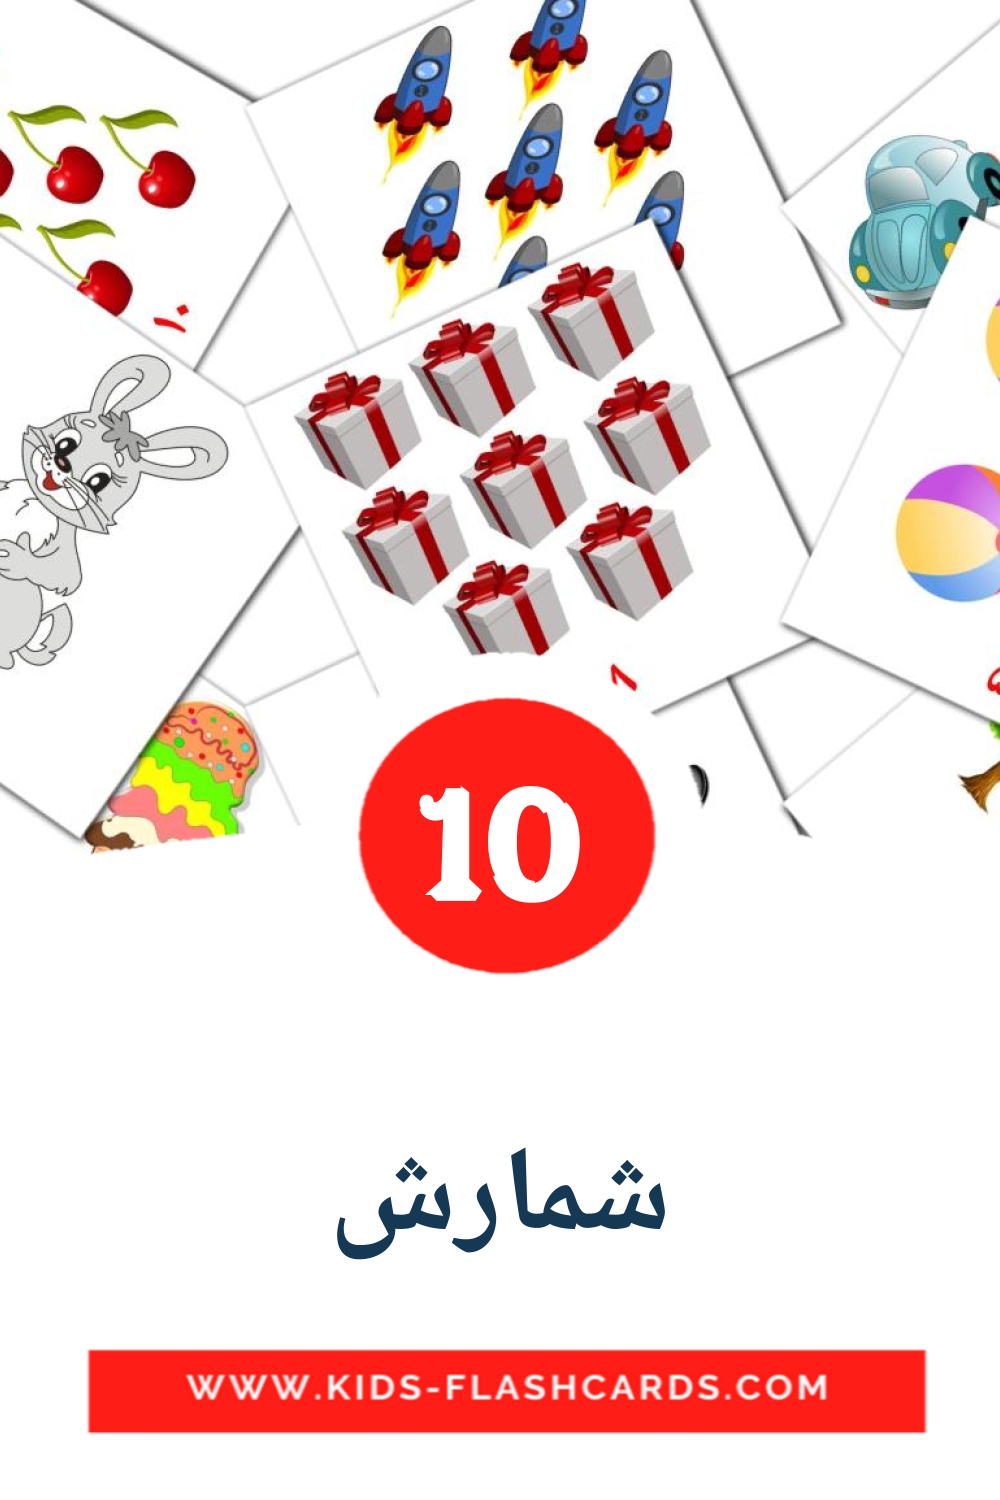 10 tarjetas didacticas de شمارش para el jardín de infancia en persa